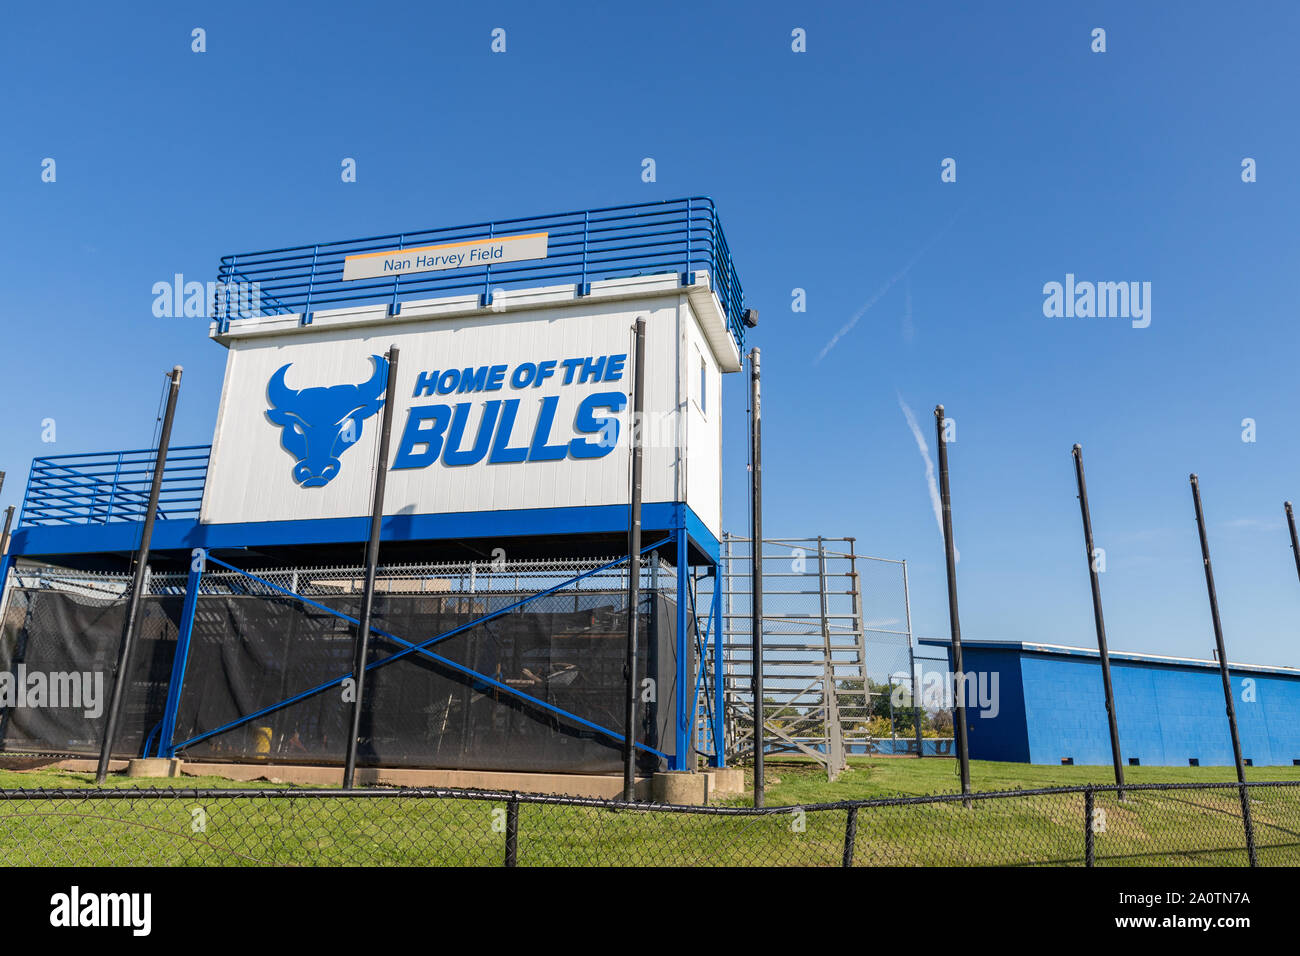 Buffalo, NY - USA / 20 septembre 2019 : Université de Buffalo Nan Harvey Field, stade de softball Banque D'Images